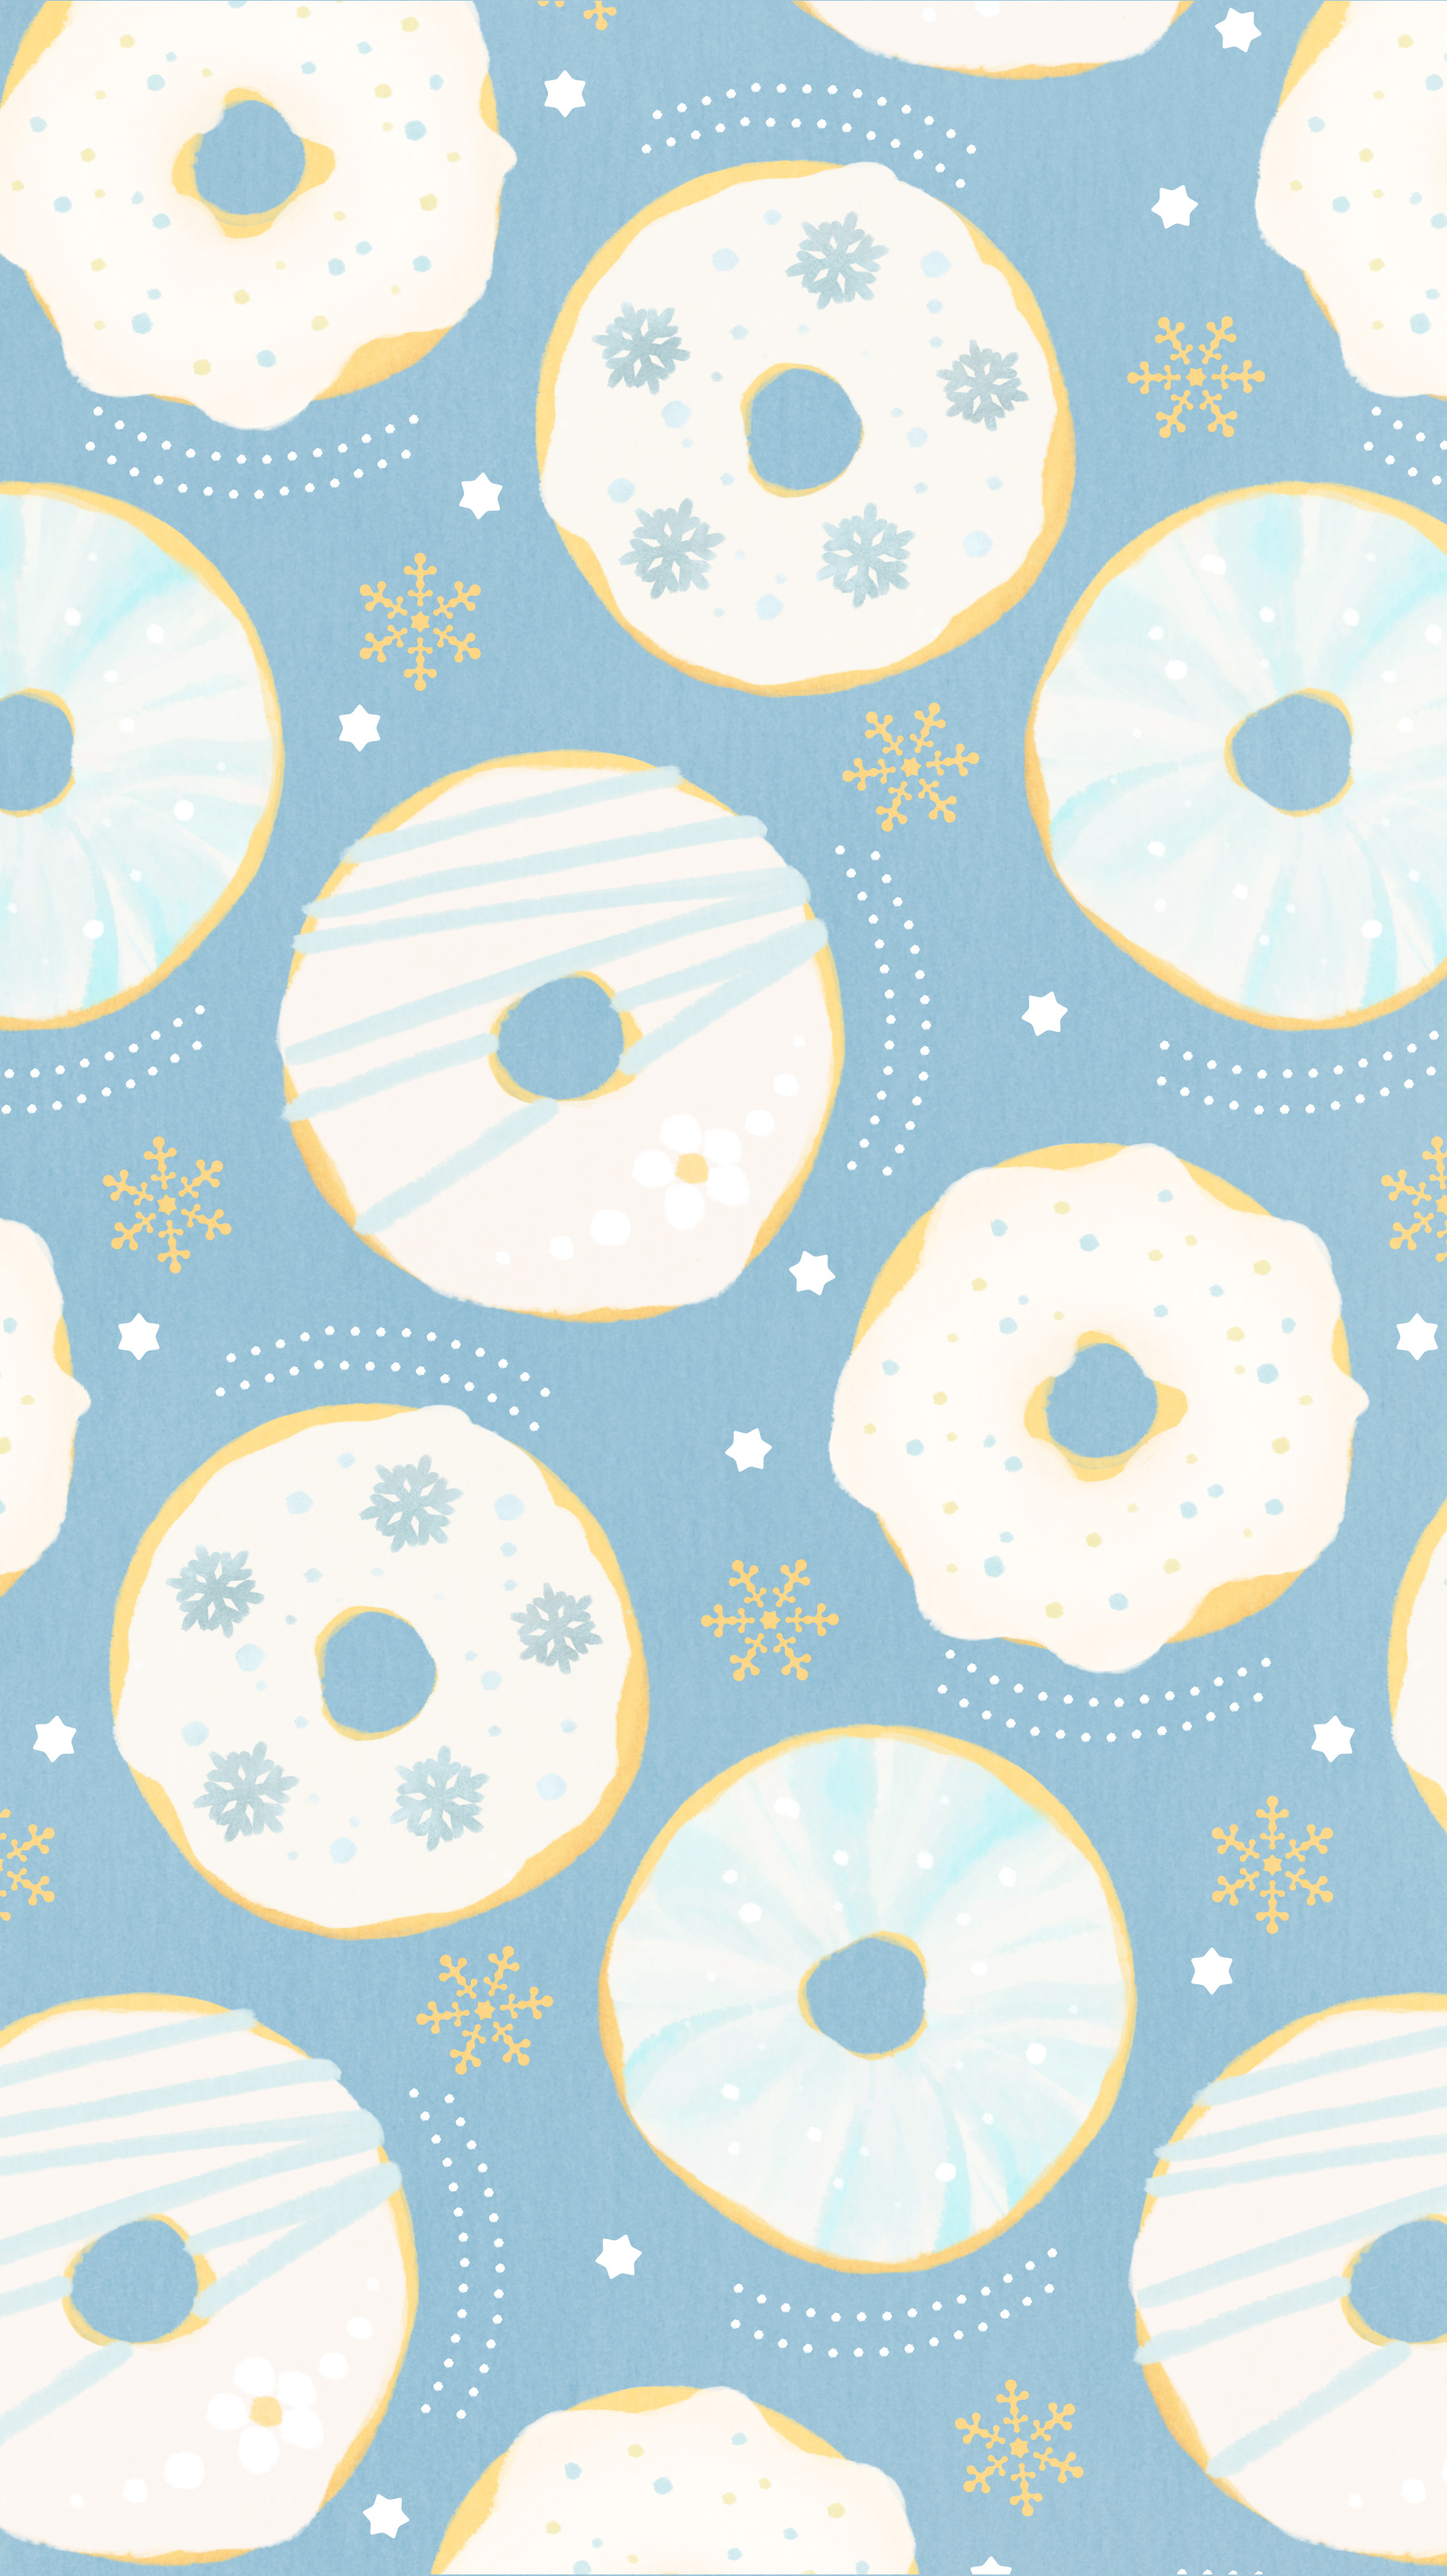 Twitter 上的 Omiyu お返事遅くなります ドーナツな壁紙 Illust Illustration ドーナツ Donuts イラスト Iphone壁紙 壁紙 雪 T Co 4zpapfd0zo Twitter